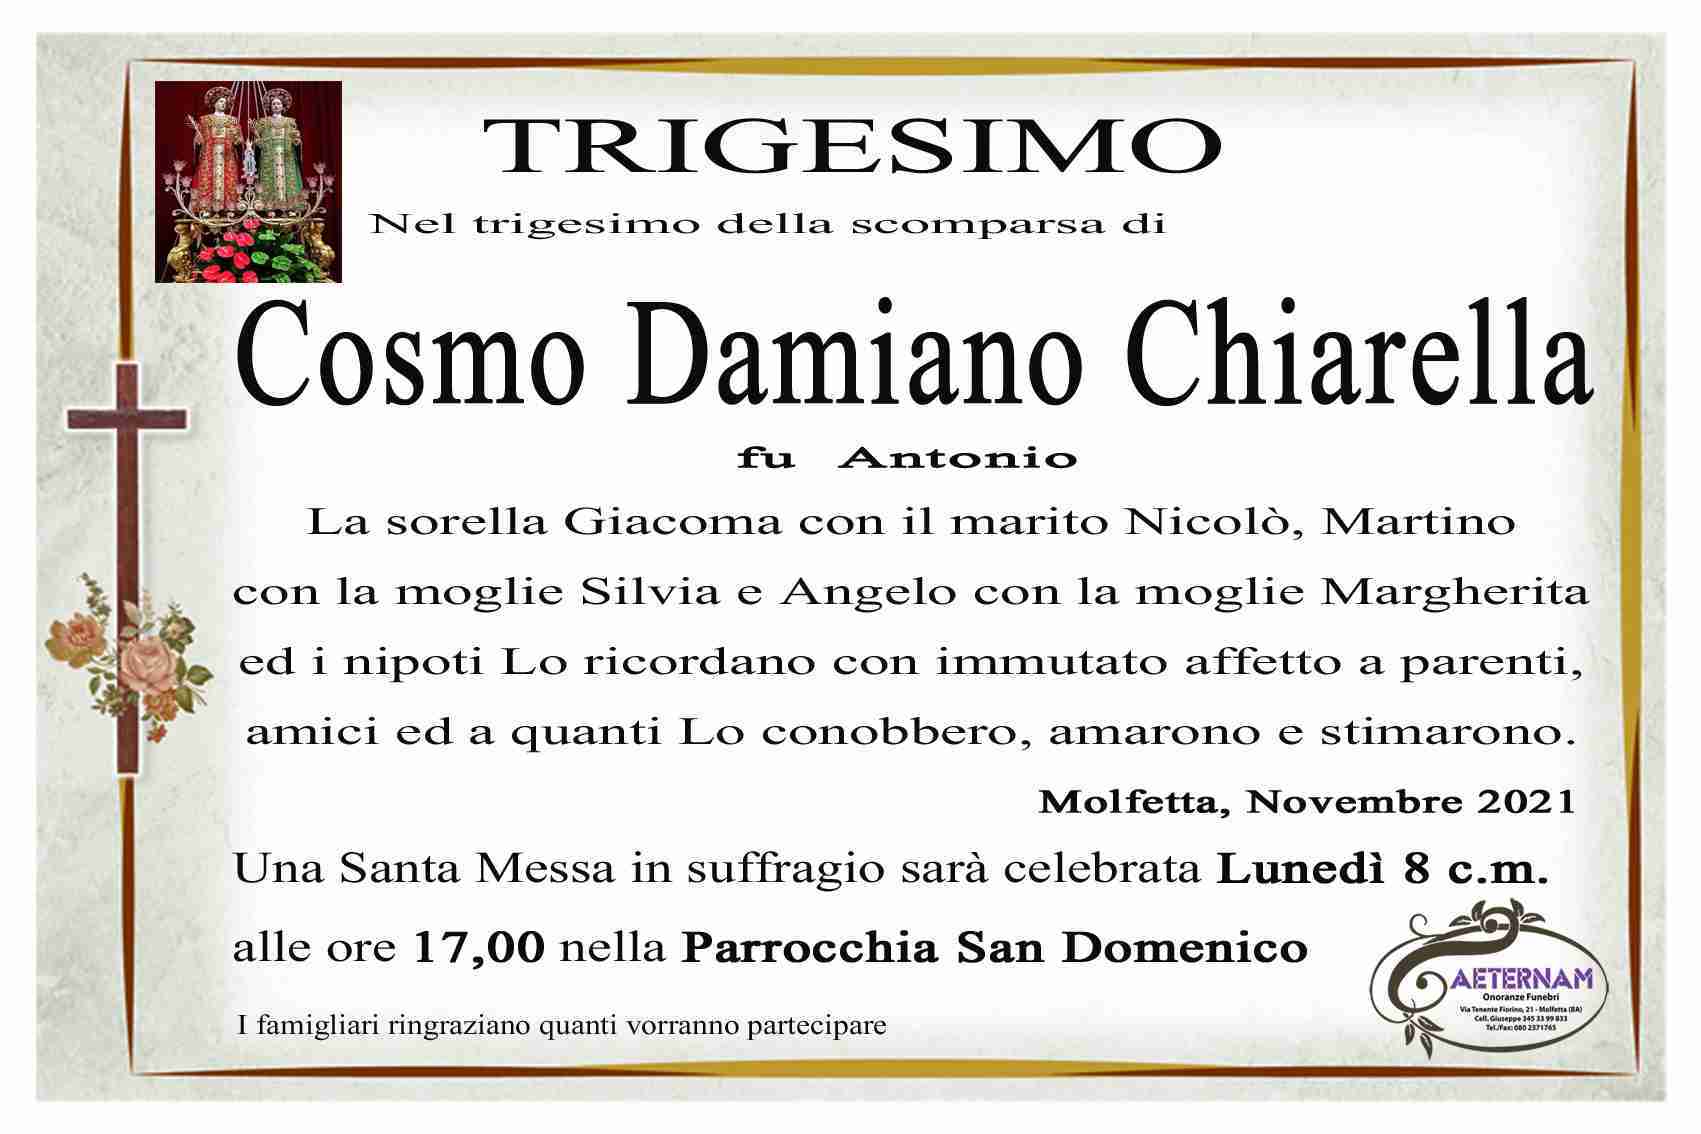 Cosmo Damiano Chiarella